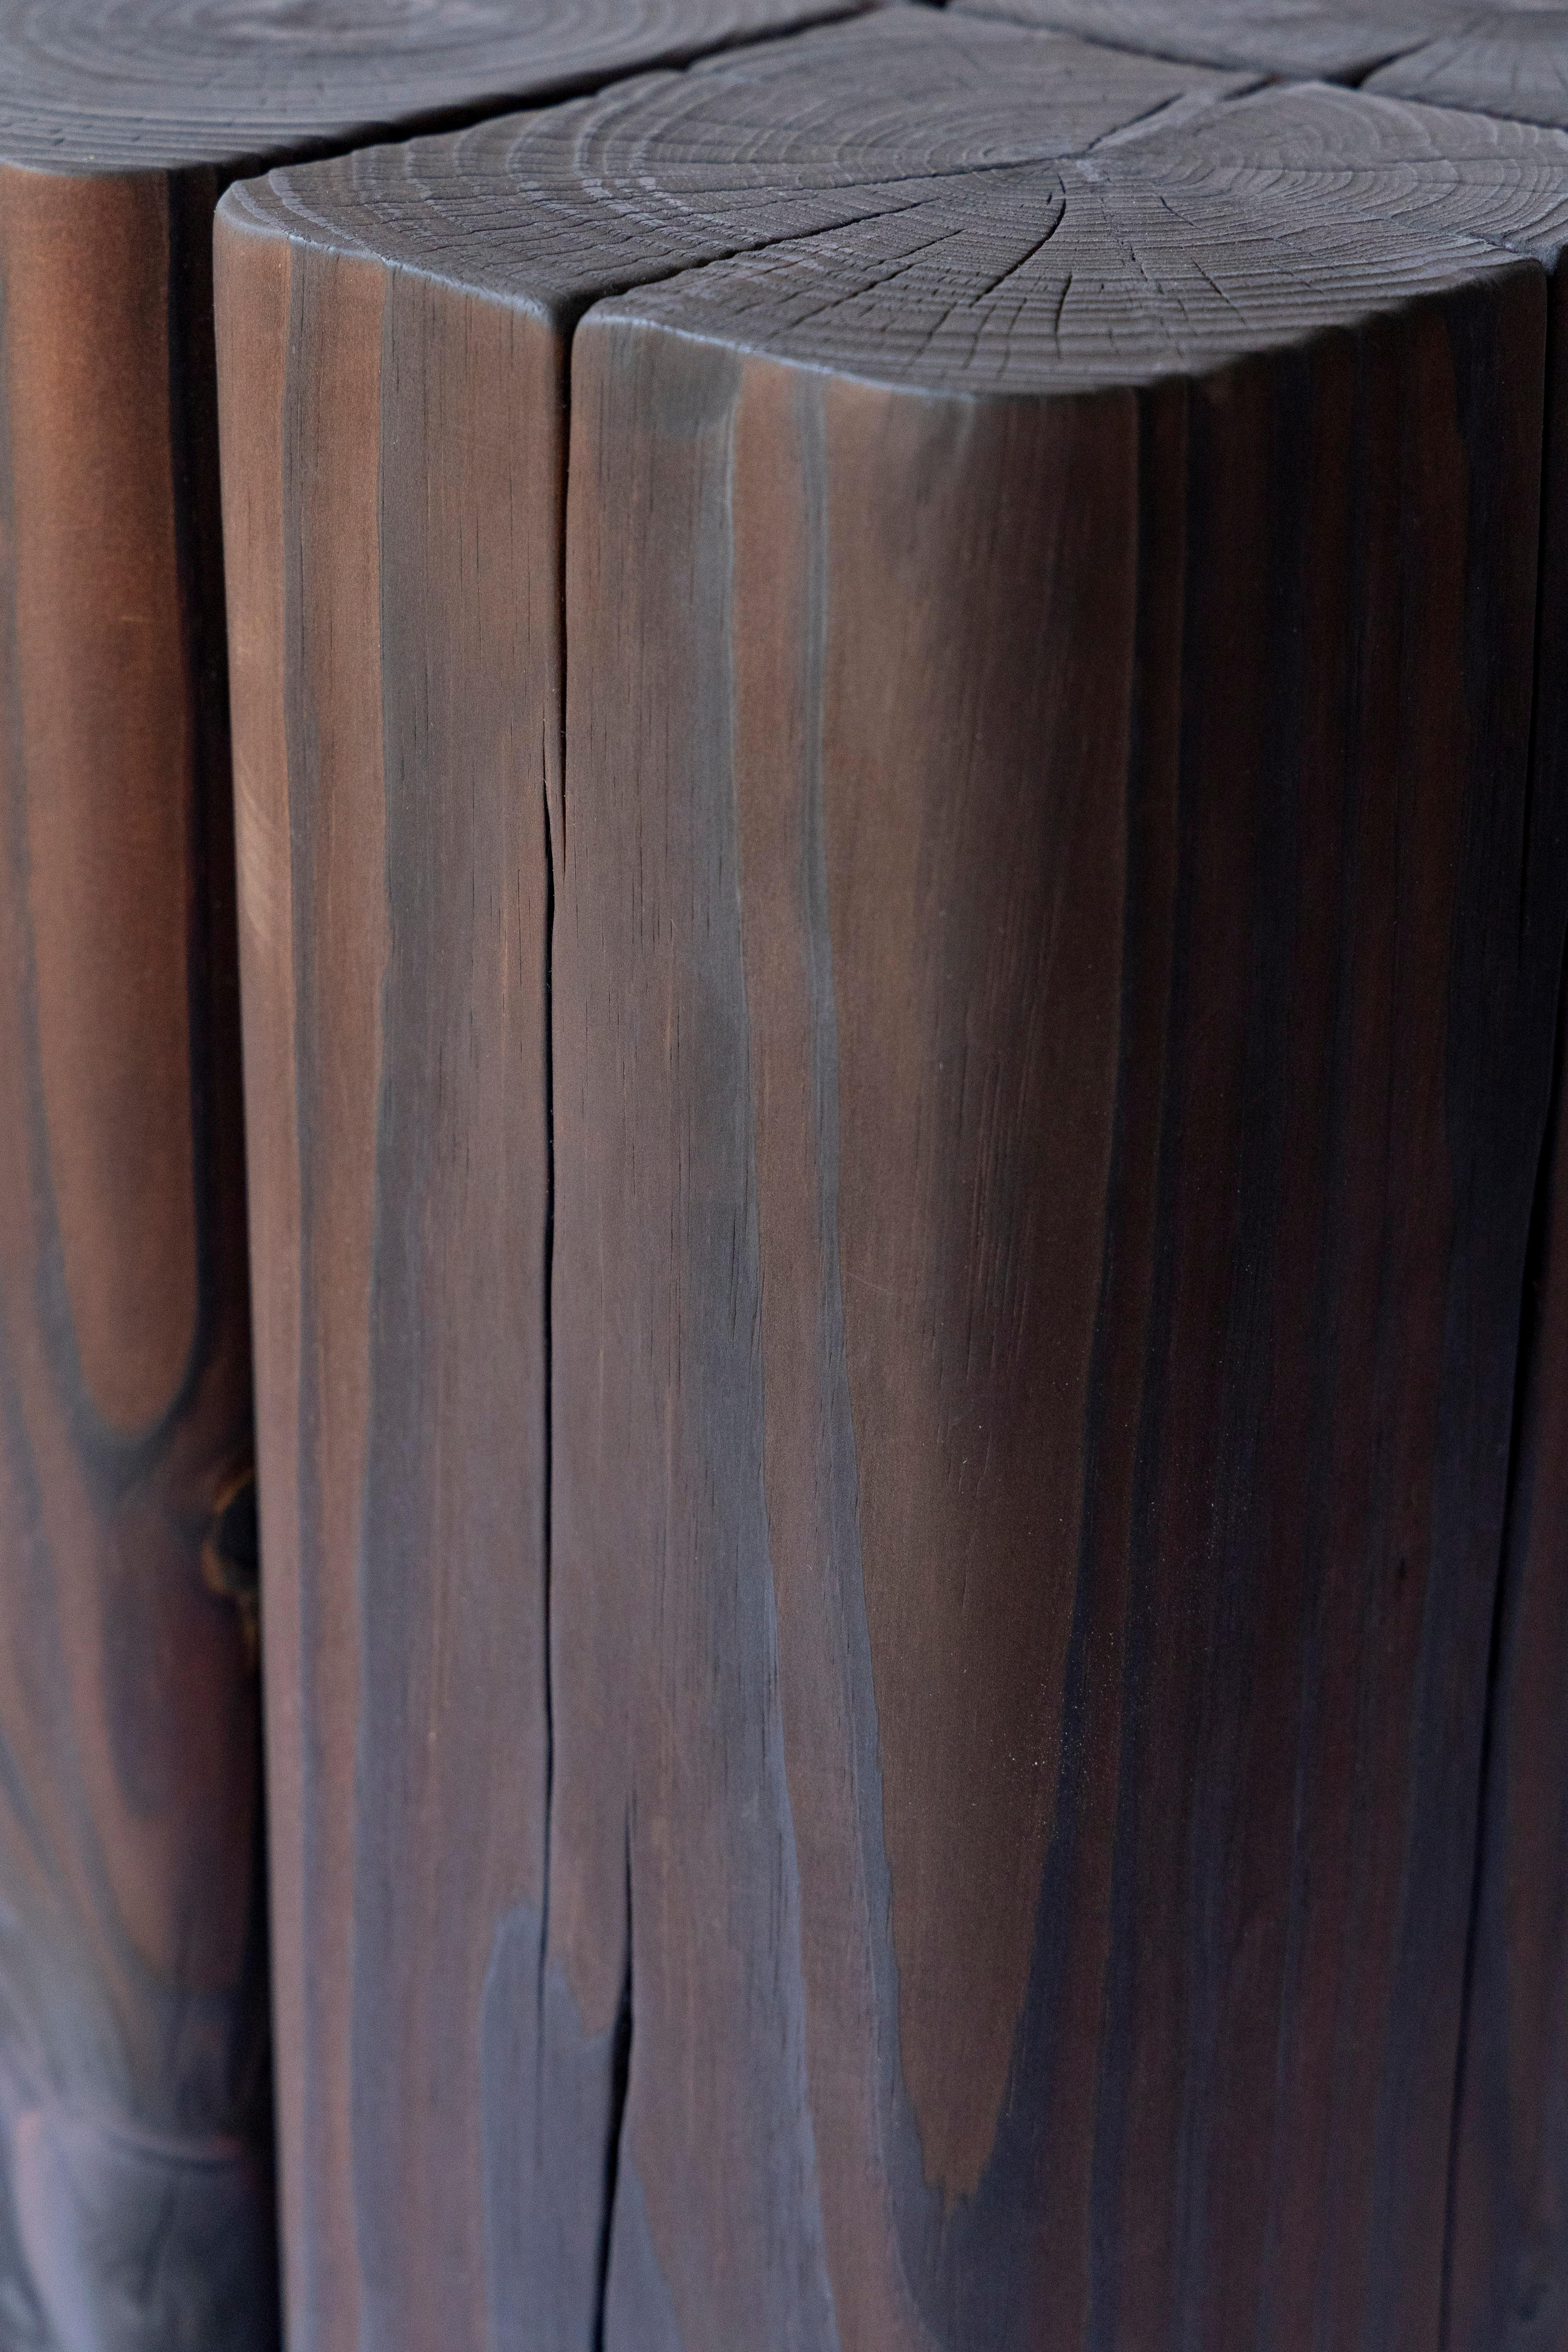 La table d'appoint Timber est fabriquée à partir de sections 6×6 de pin blanc de l'Est récupérées sur des chutes de charpente architecturale. Le bois arrive vert et est soigneusement façonné et assemblé pour former cette table robuste. La pièce est